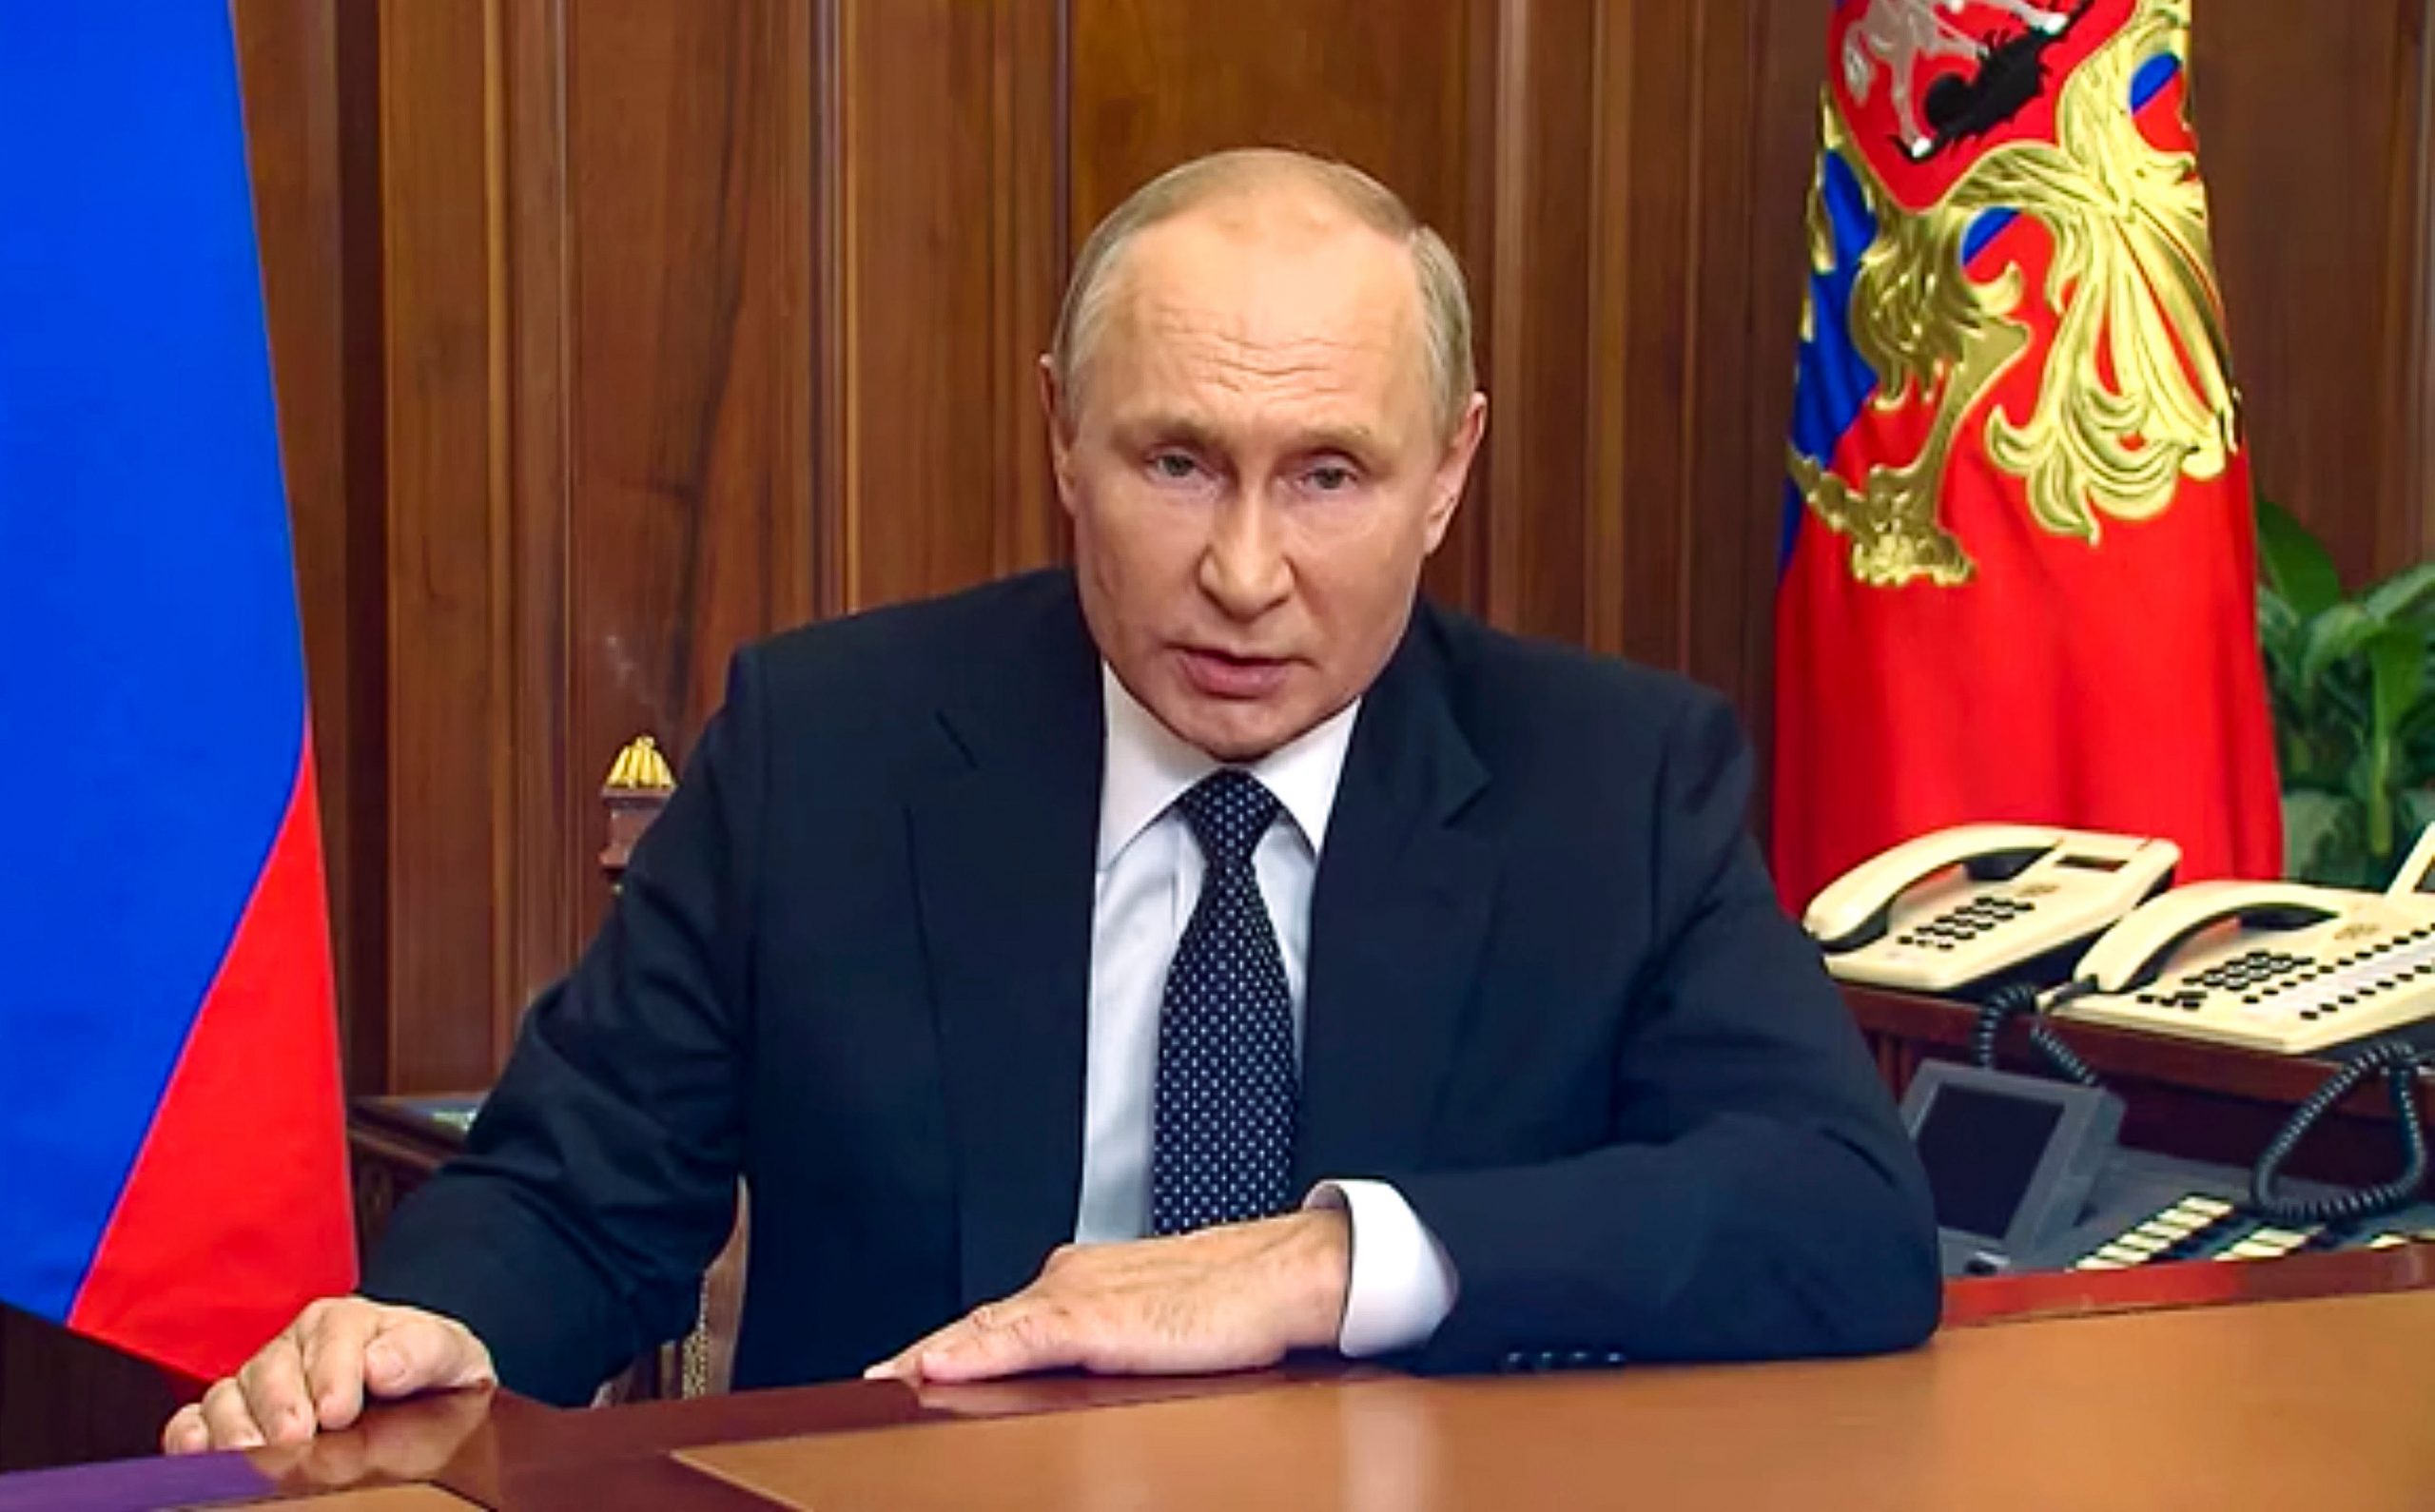 Putin announces partial mobilisation of 300,000 troops